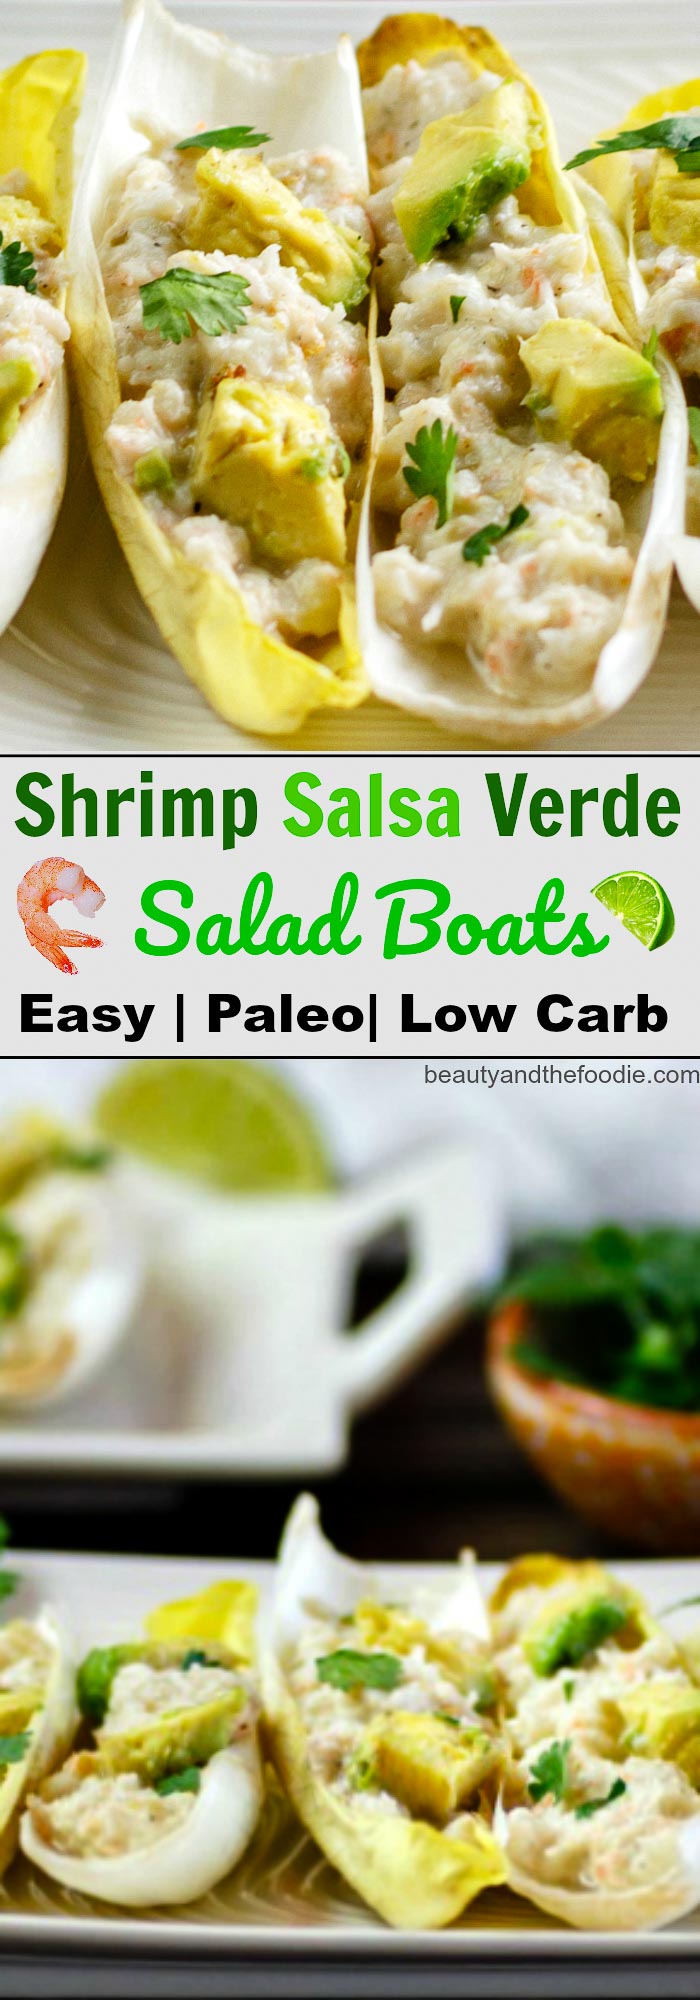 Shrimp Salsa Verde Salad Boats are paleo , low carb, shrimp salsa verde salad in endive boats.